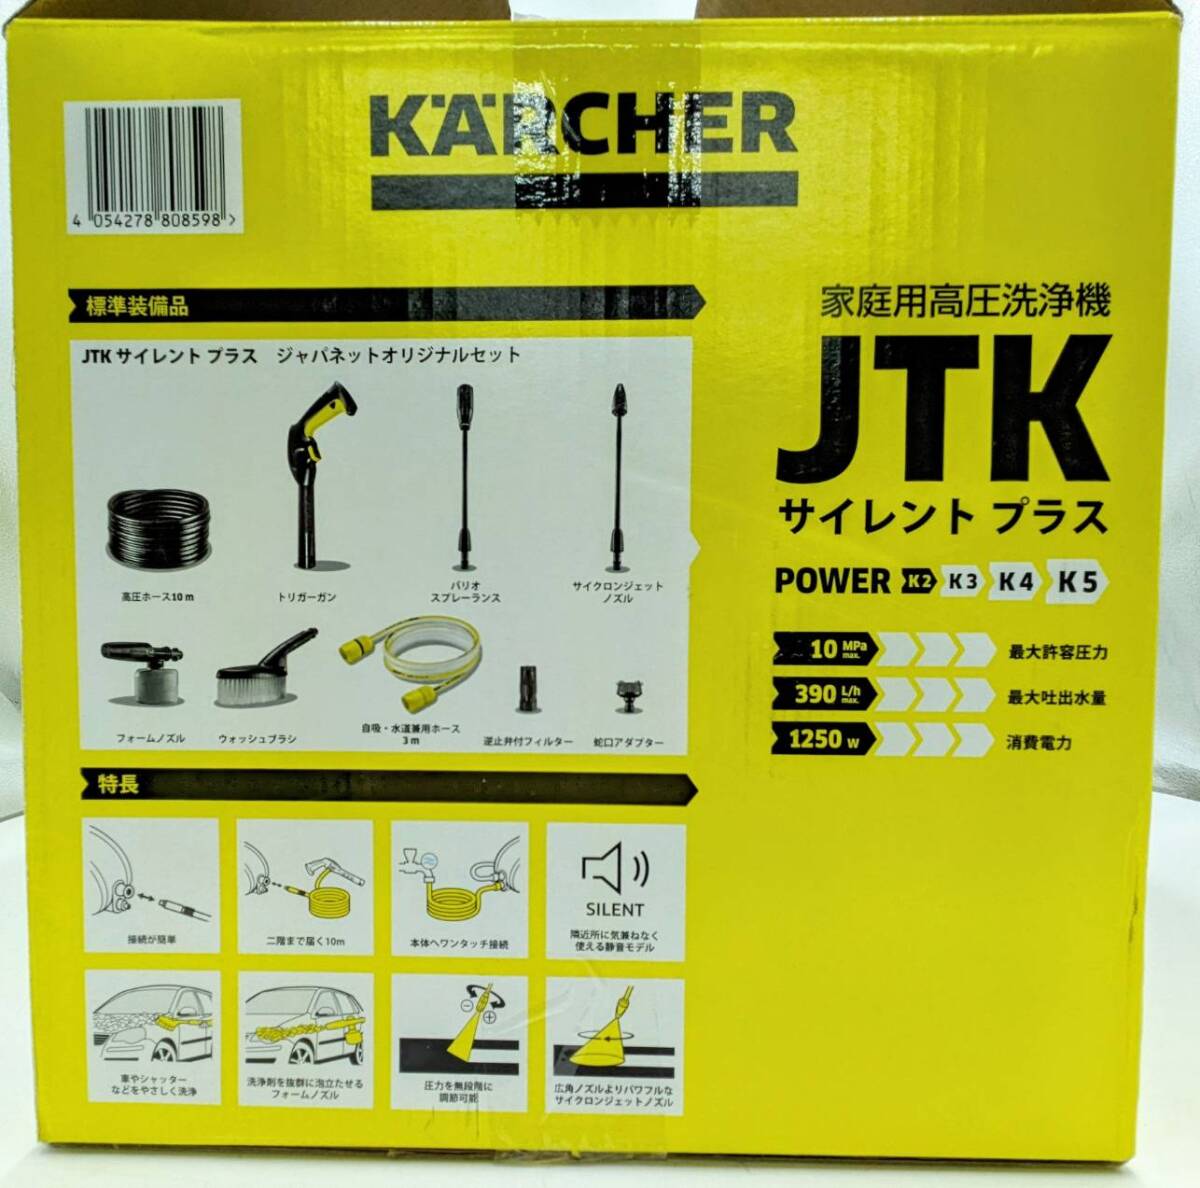 ケルヒャー KARCHER 家庭用高圧洗浄機 JTK SILENT PL サイレントプラス ジャパネットオリジナルセット 1.600-901.0 箱入り 静音 掃除用品_画像3